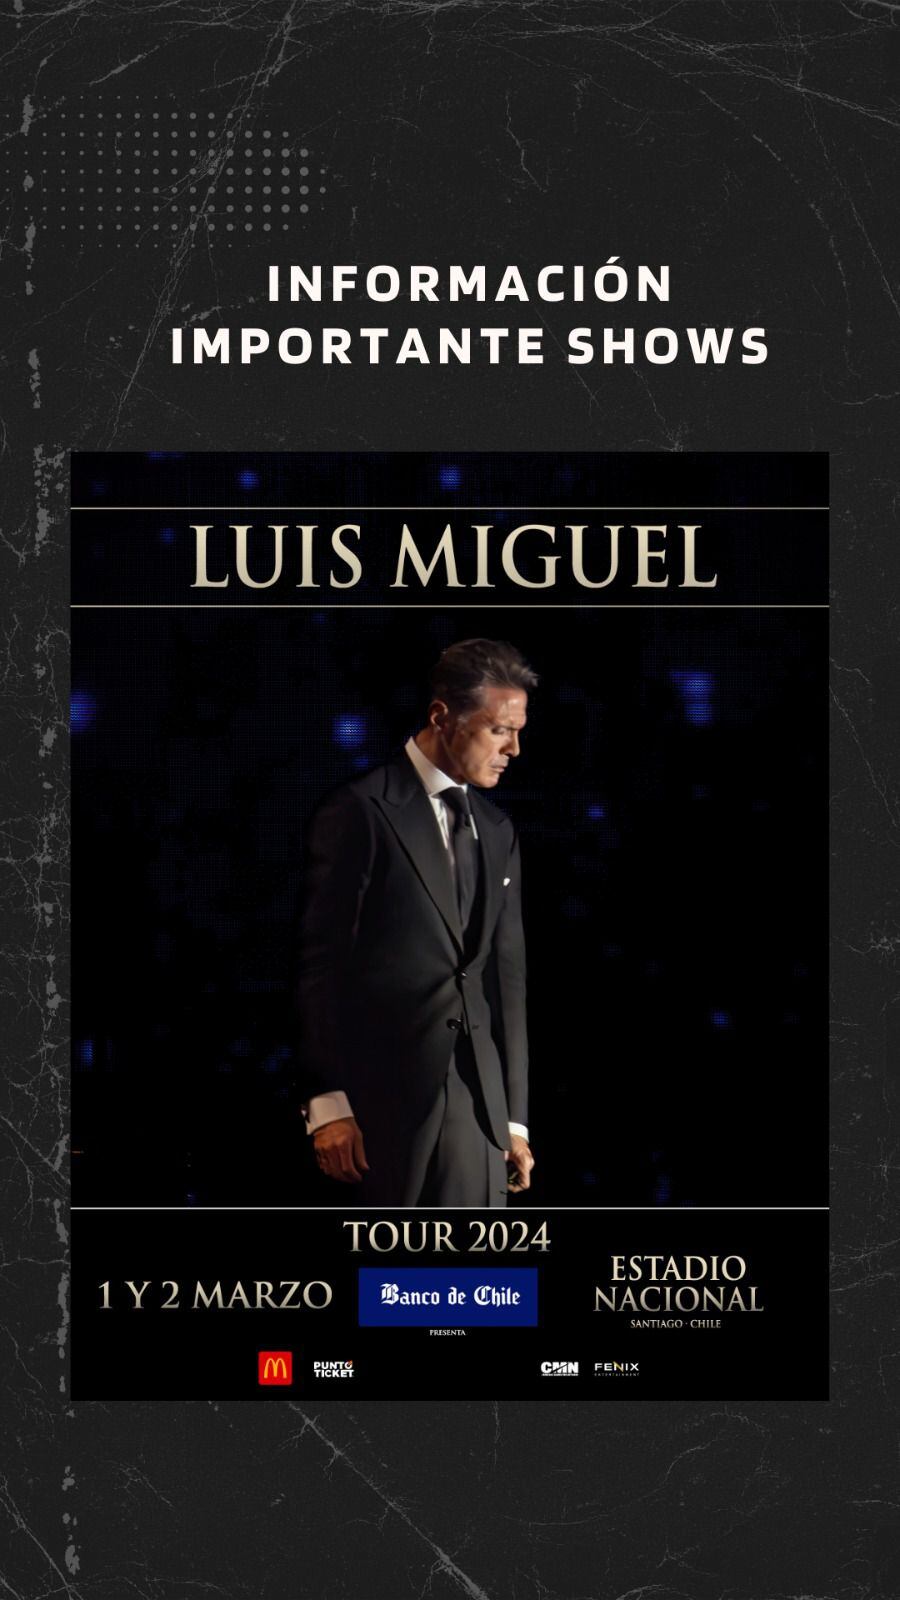 Luis Miguel se presenta el 1 y 2 de marzo en Chile! Revisa la